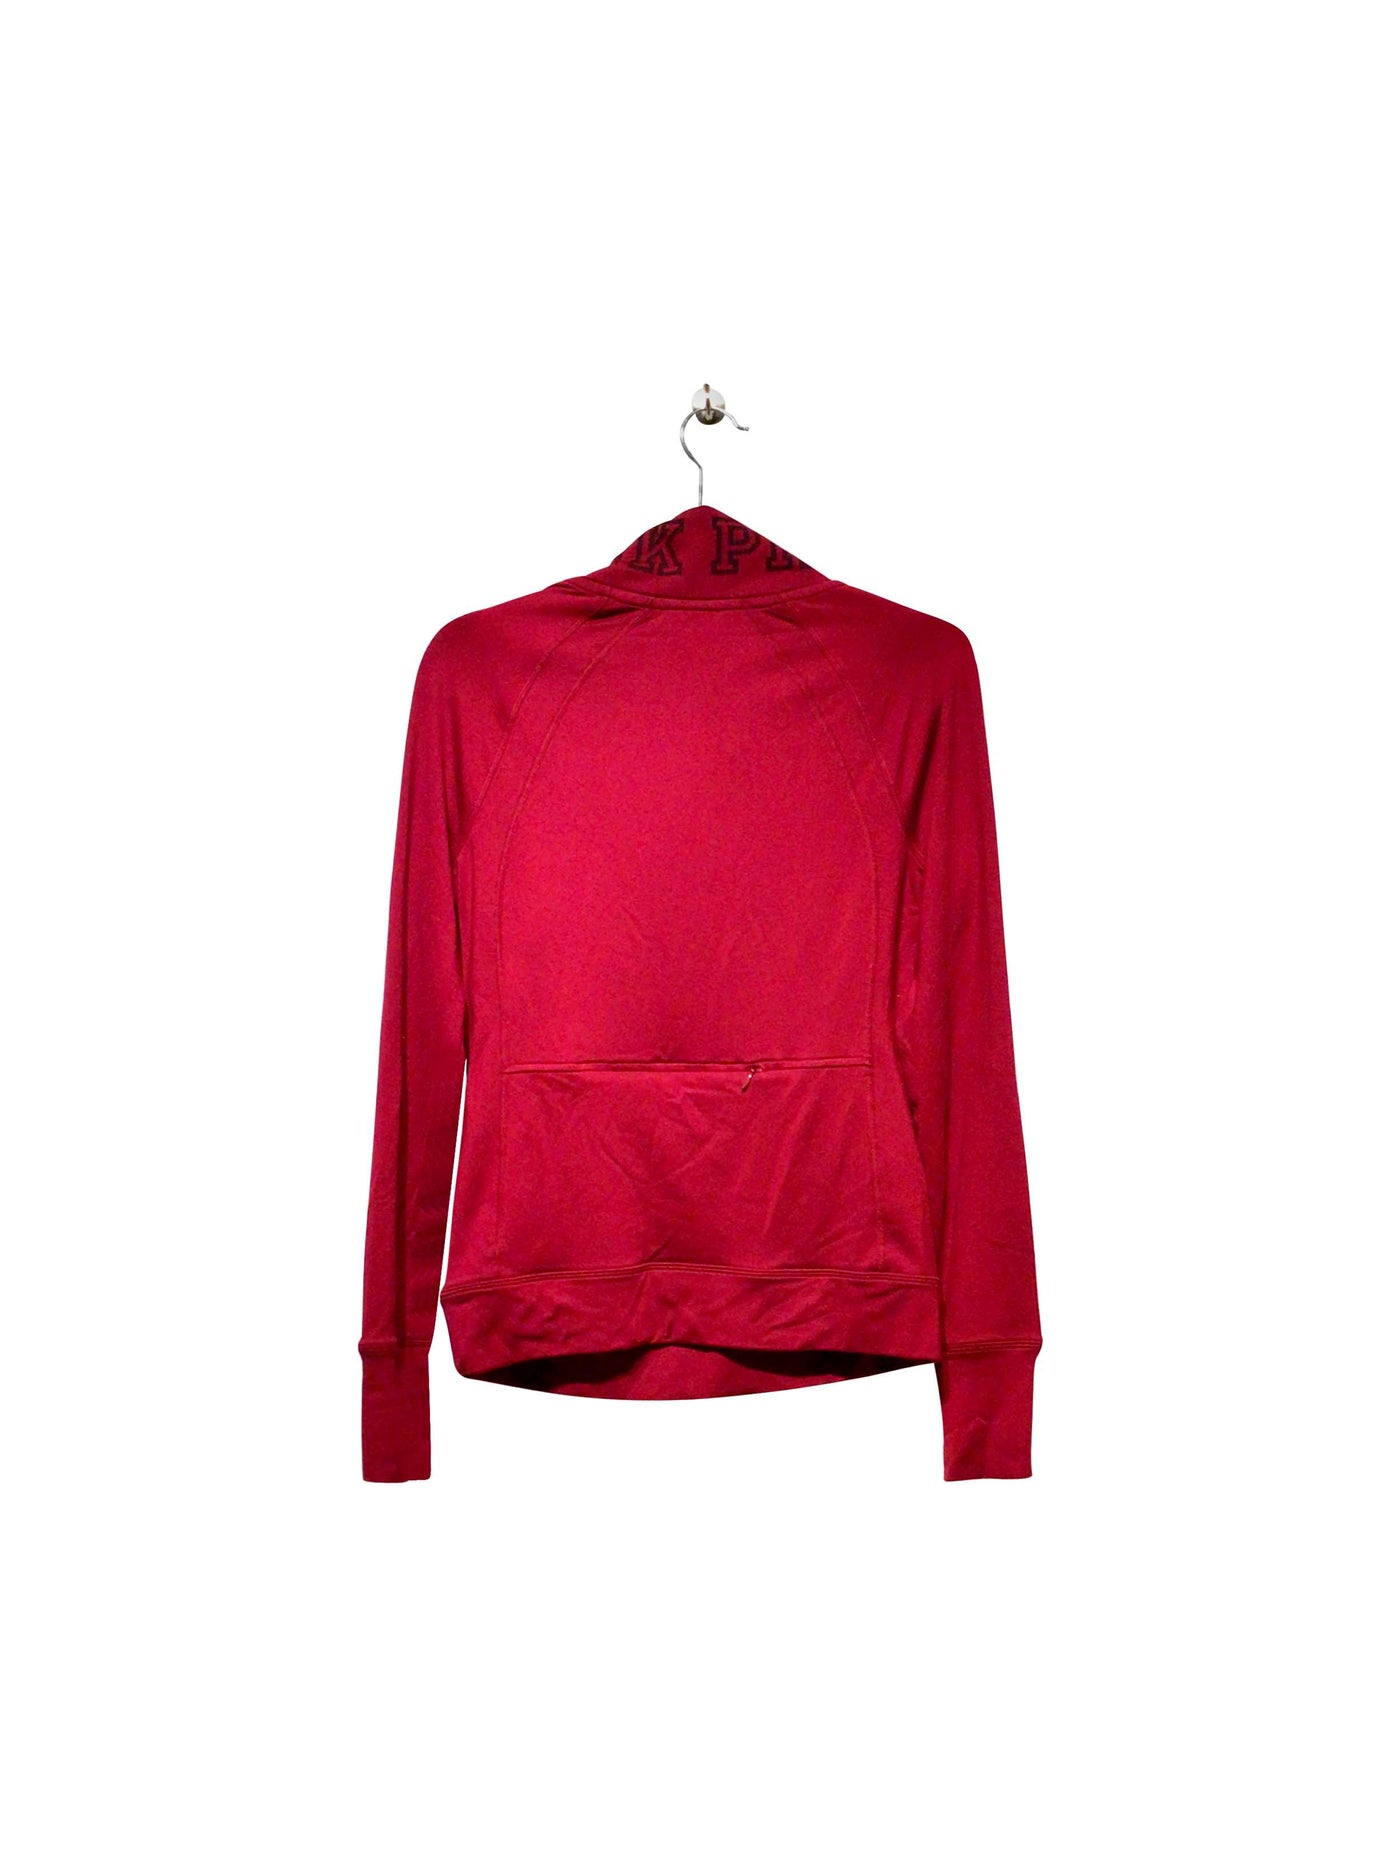 VICTORIA'S SECRET Regular fit T-shirt in Red  -  XS  8.42 Koop